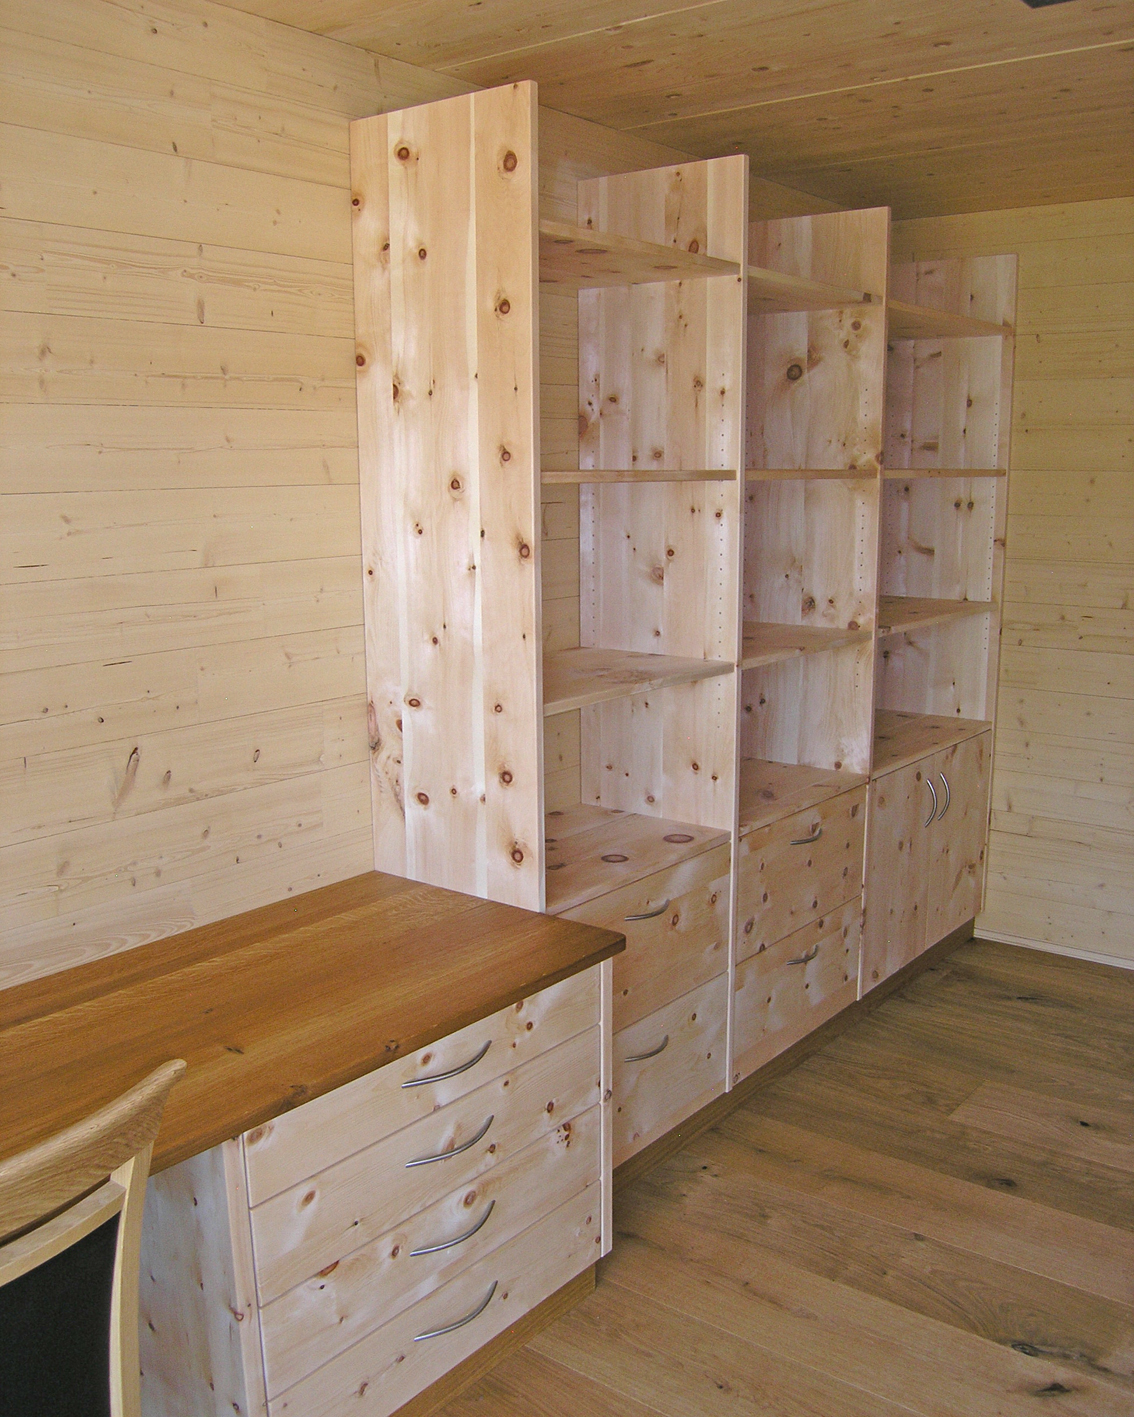 Zirbenholz-Regalwand 08.1, massive Zirbe, Unterteil als Kommode mit Schubladen und Türen, angebauter Schreibtisch, Deckplatte aus Eiche, passend für einen Arbeitsraum mit ruhiger Atmosphäre